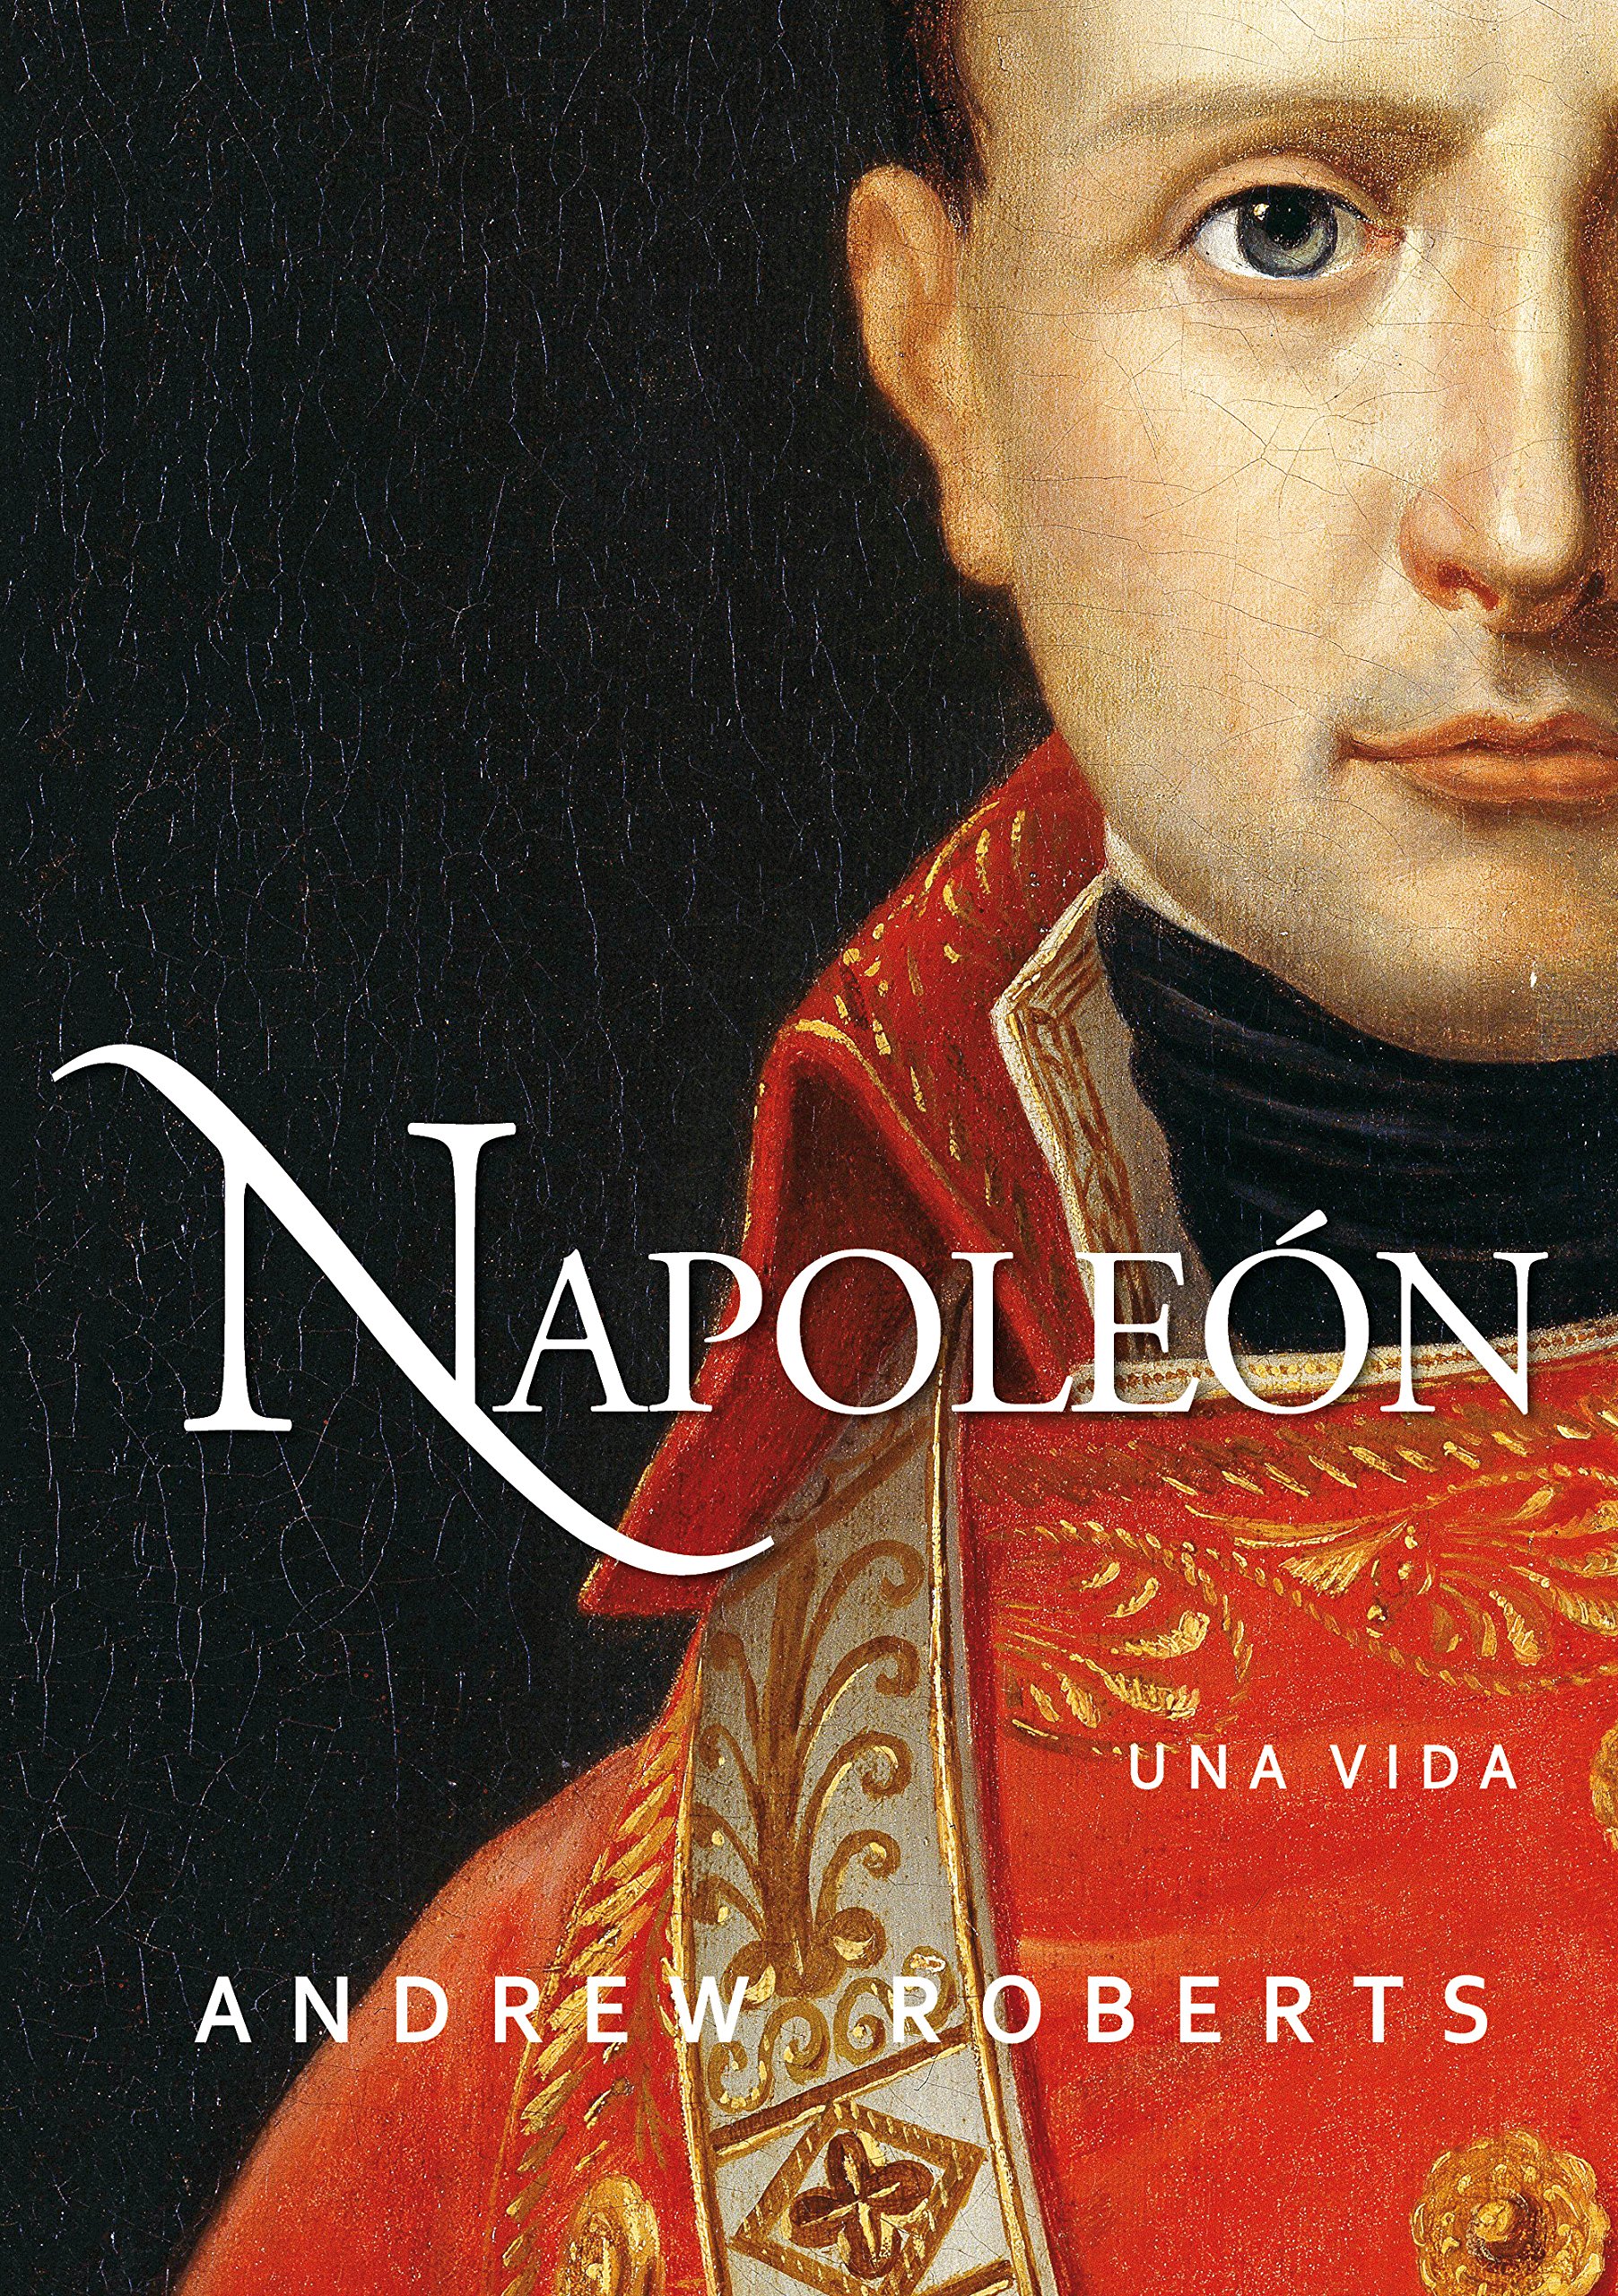 Napoleón: una vida (Ayer y hoy de la historia) (Spanish Edition)